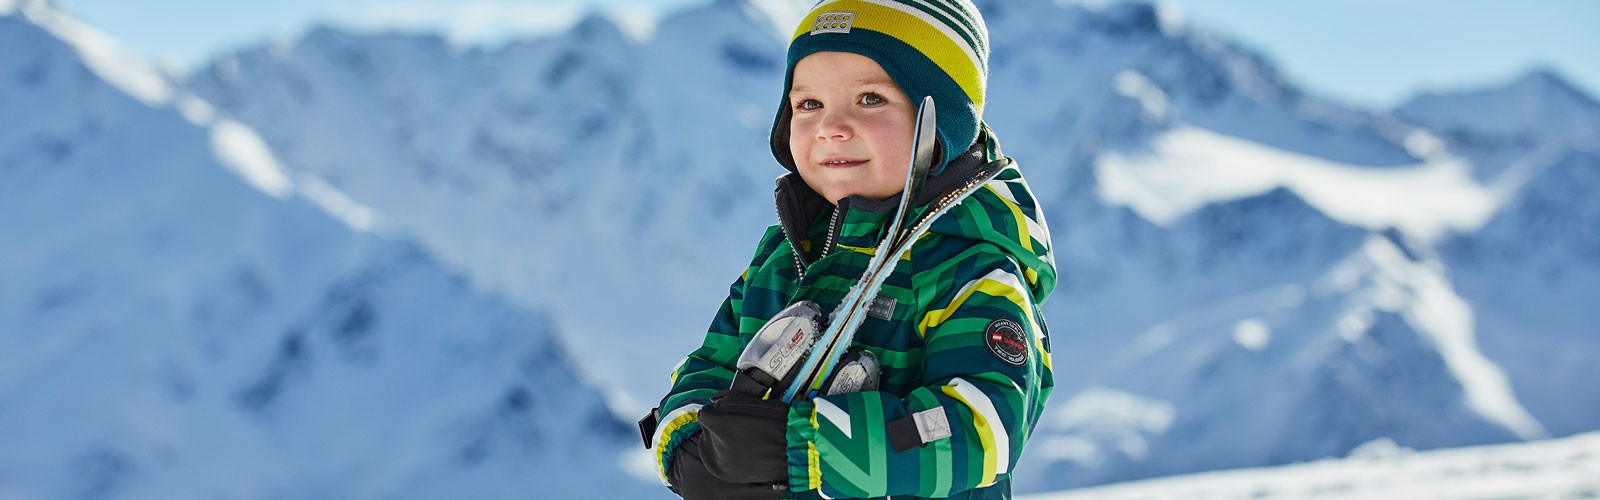 Equipement ski enfant - Le spécialiste neige de l'enfant et du bébé